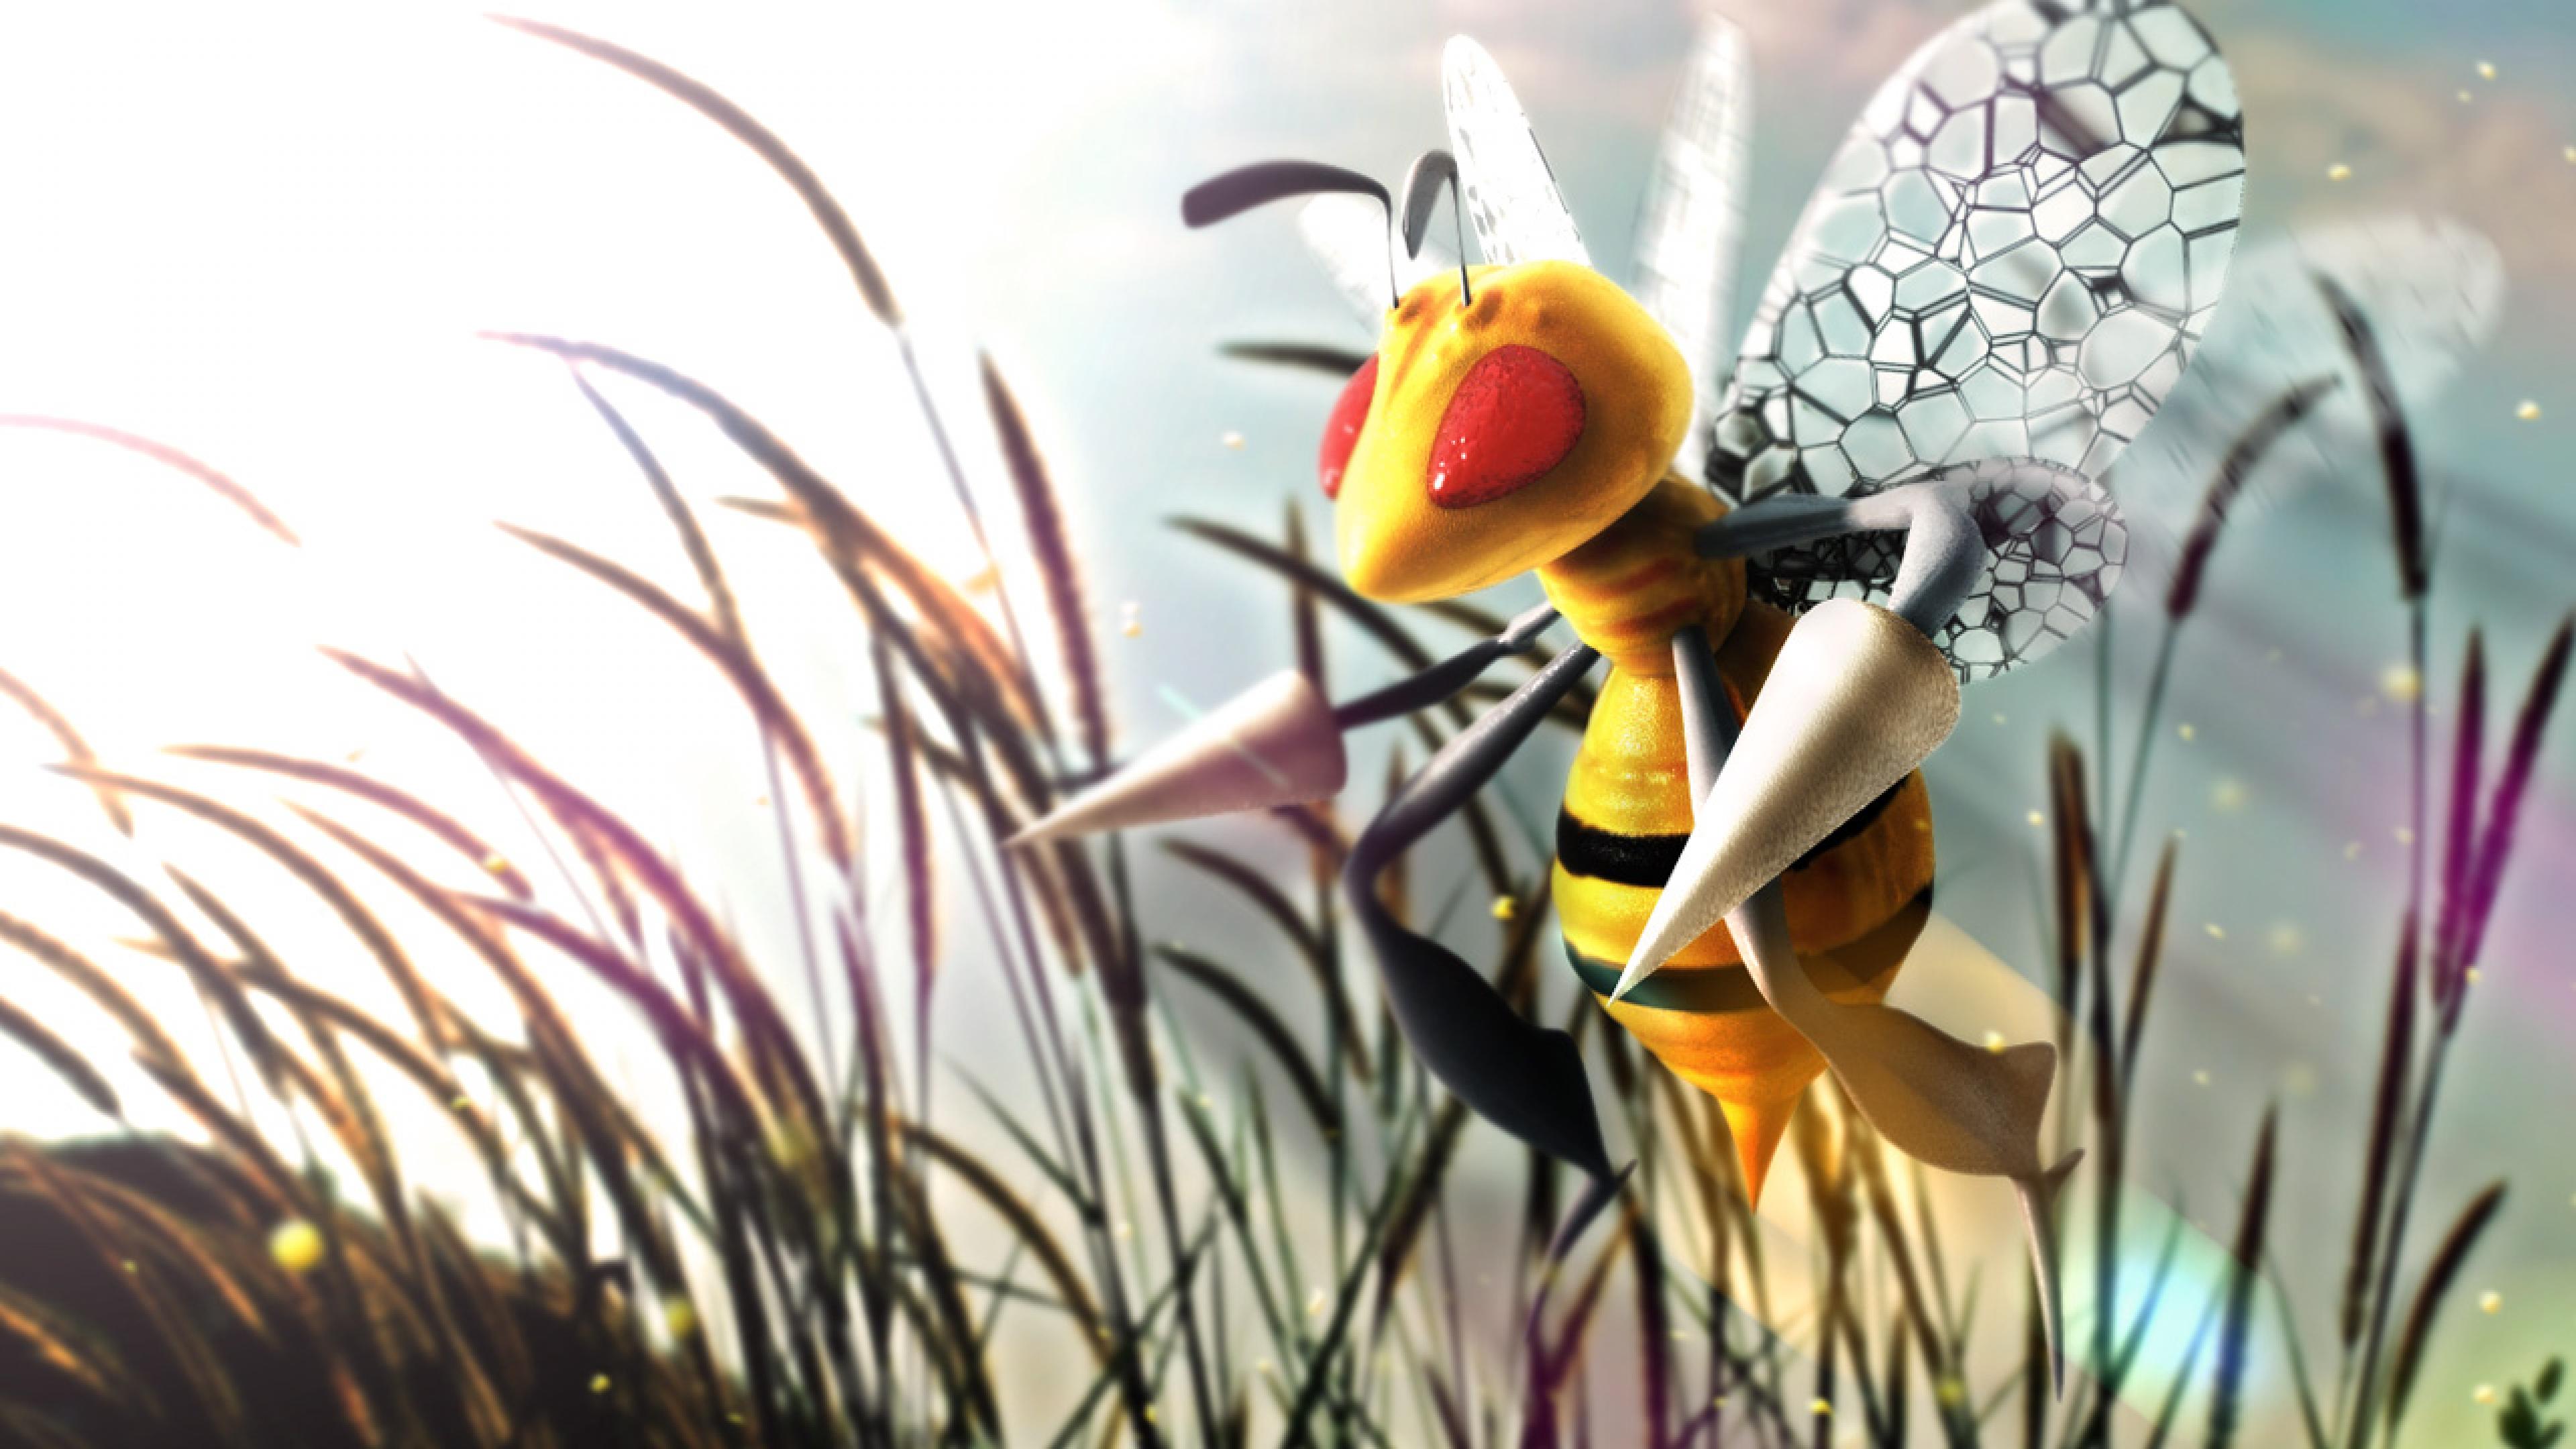 Pokemon Beedrill 9bk7 For Your Desktop